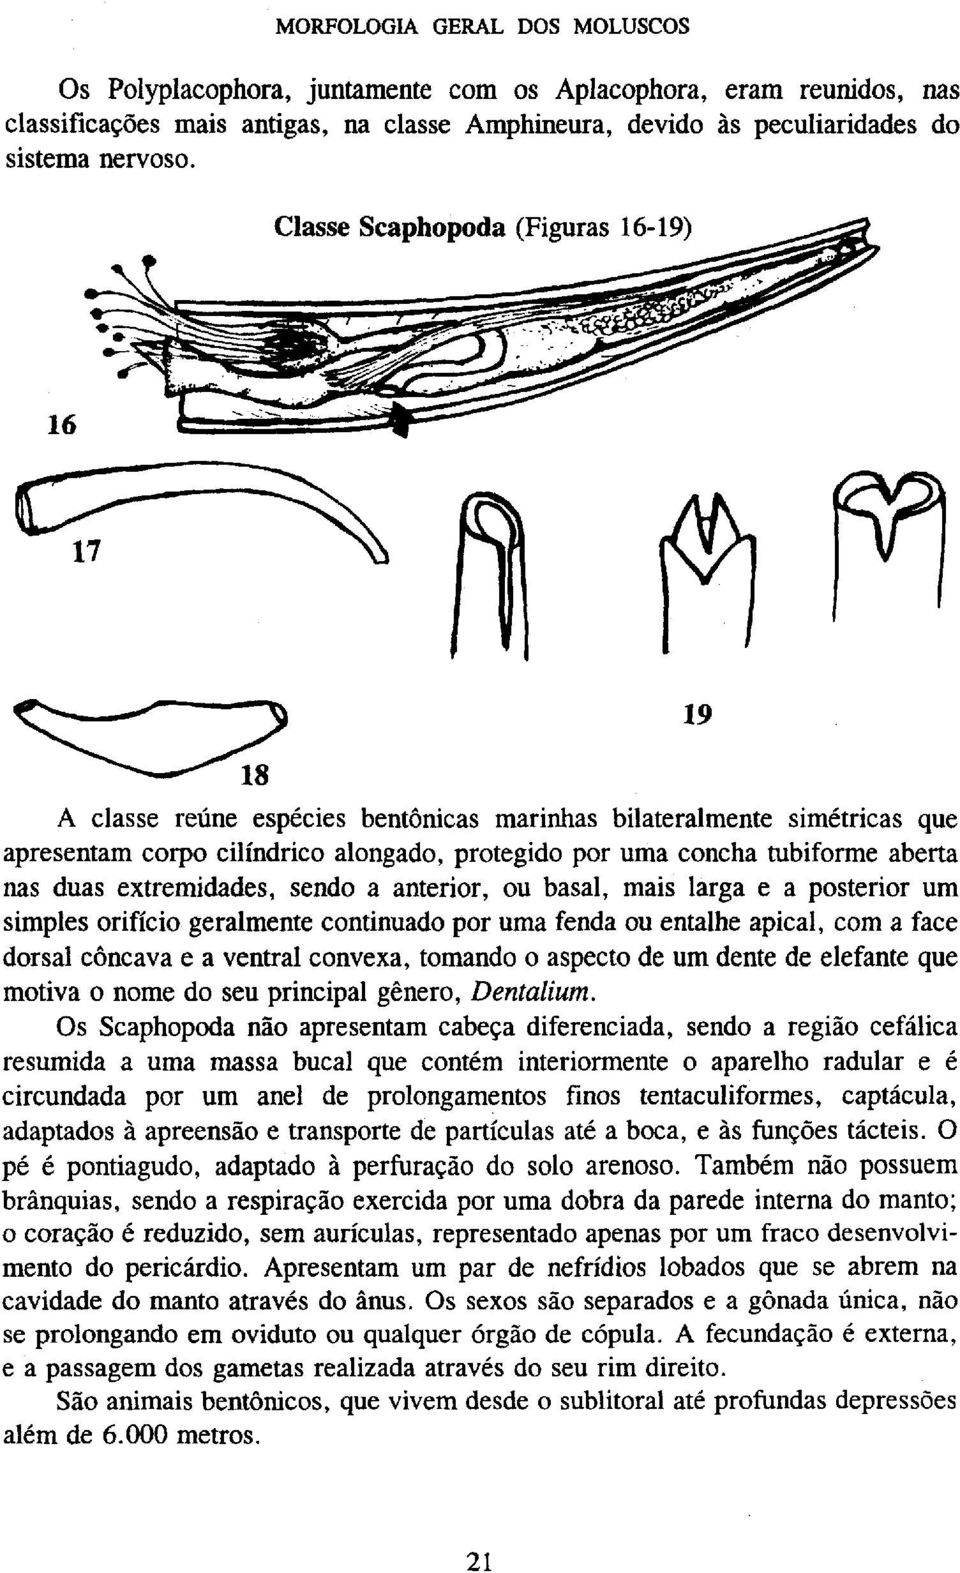 basal, mais larga e a posterior um simples orifício geralmente continuado por uma fenda ou entalhe apical, com a face dorsal côncava e a ventral convexa, tomando o aspecto de um dente de elefante que